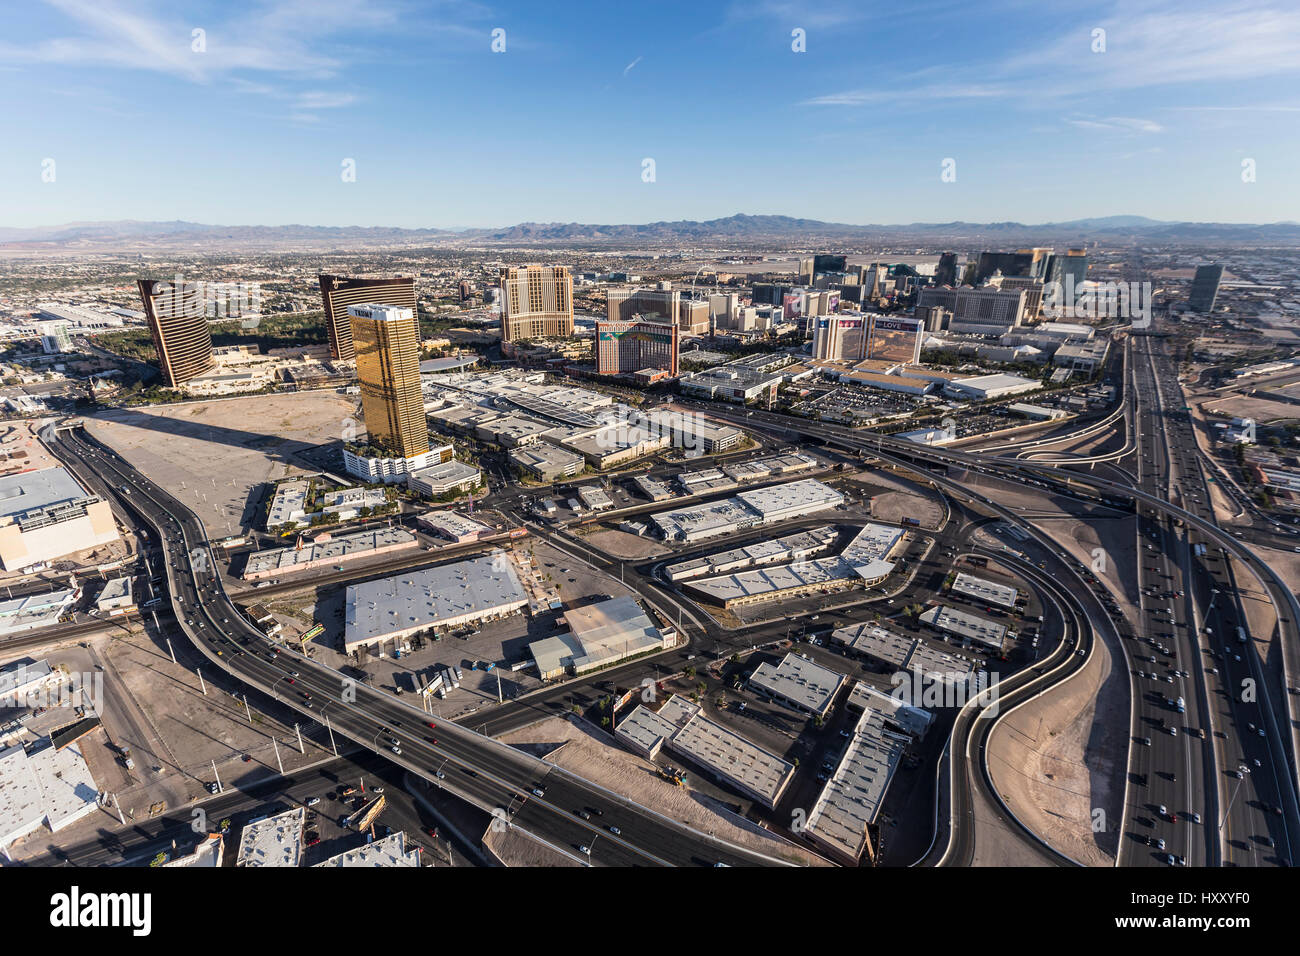 Las Vegas, Nevada, Stati Uniti d'America - 13 Marzo 2017: vista aerea del resort di Las Vegas, strade e Interstate 15. Foto Stock